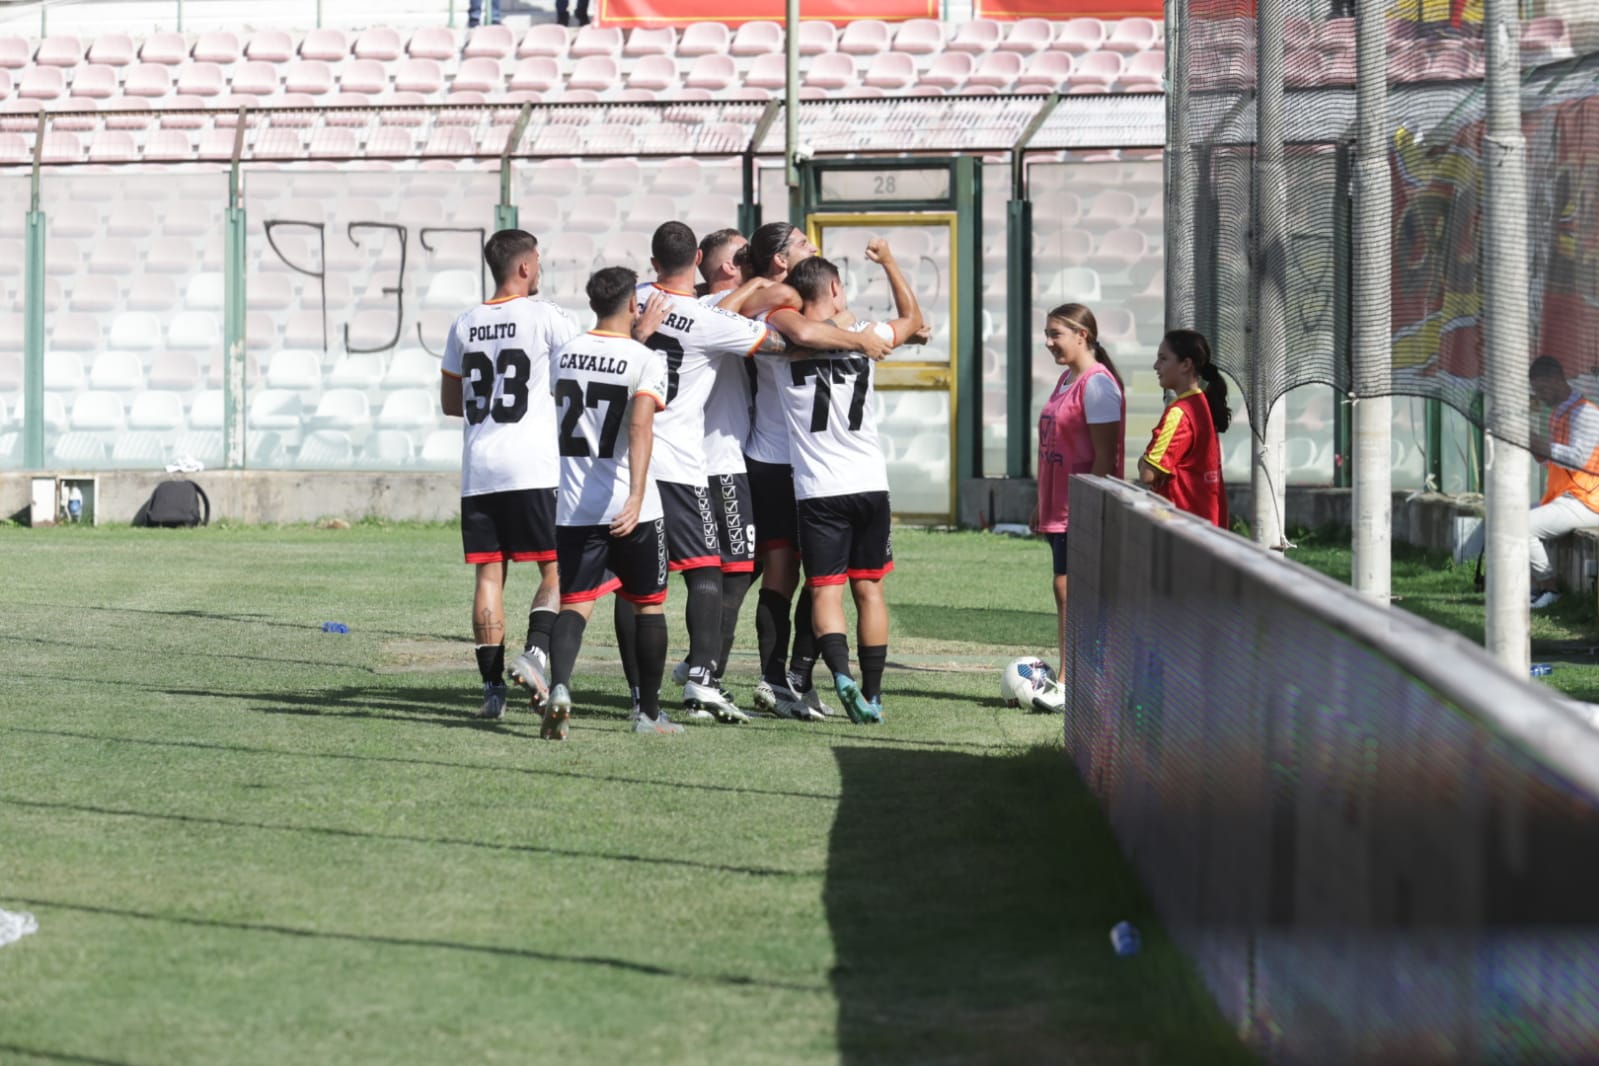 Messina-Giugliano 1-0: cronaca semiseria di un pomeriggio di passione